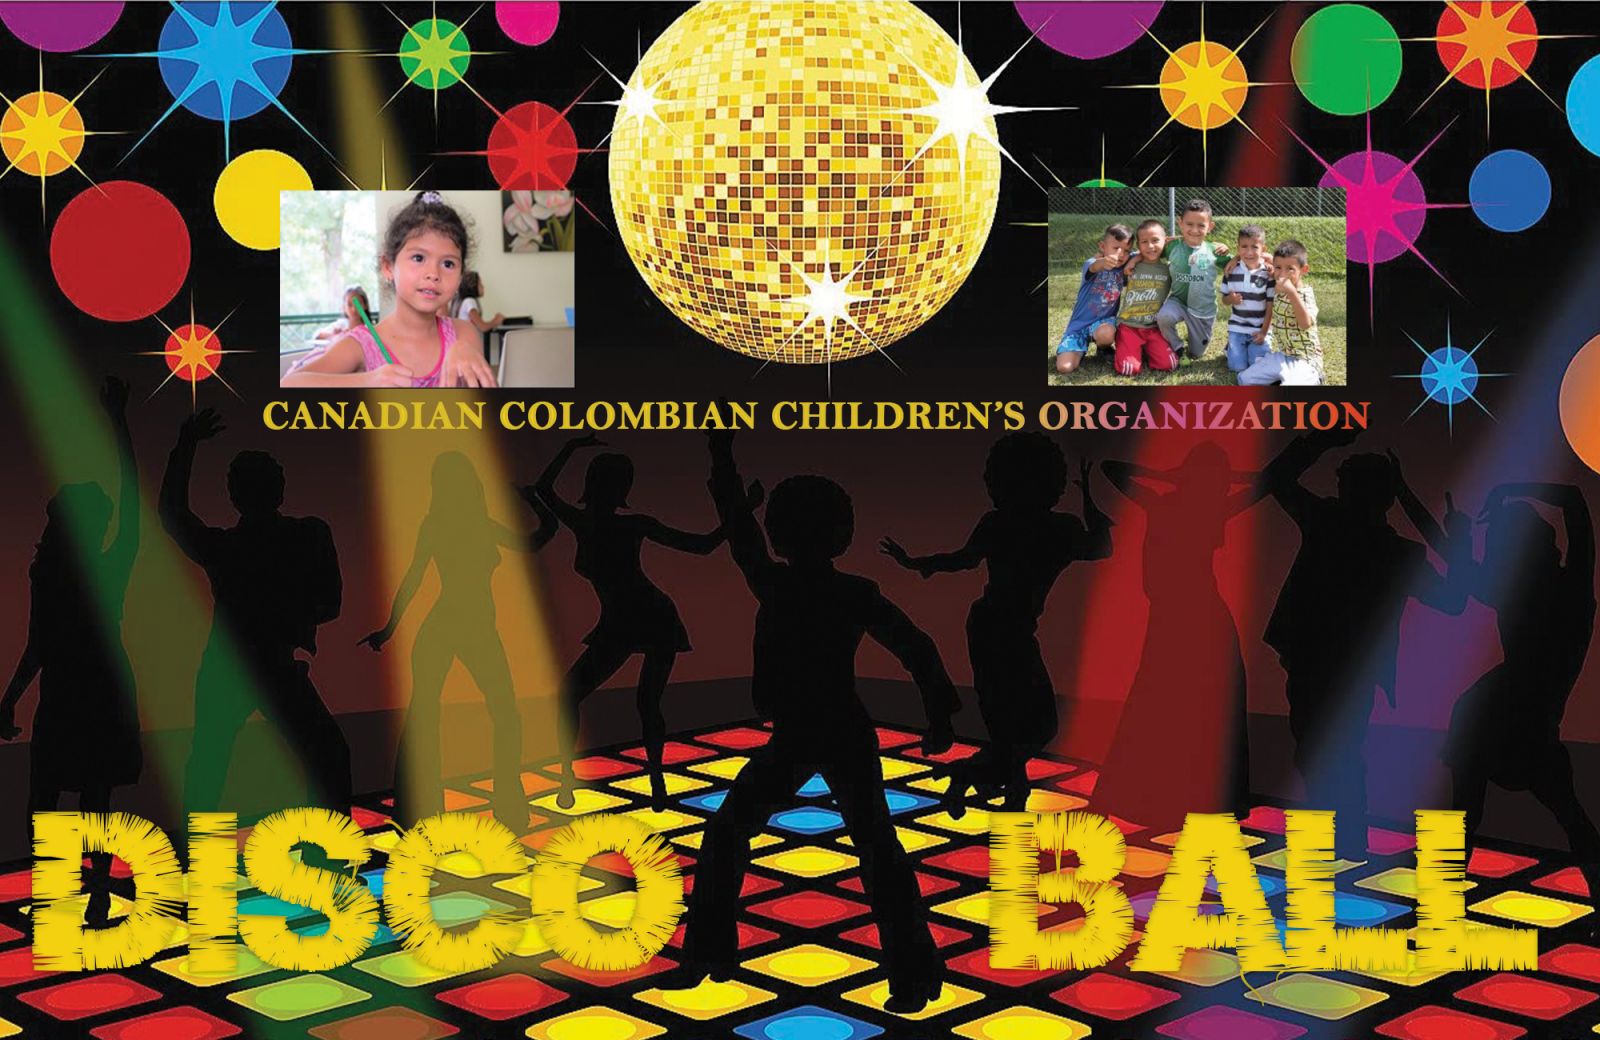 Cena de gala, y baile al estilo de 60s y 70s, en Toronto, por una buena causa en Colombia  